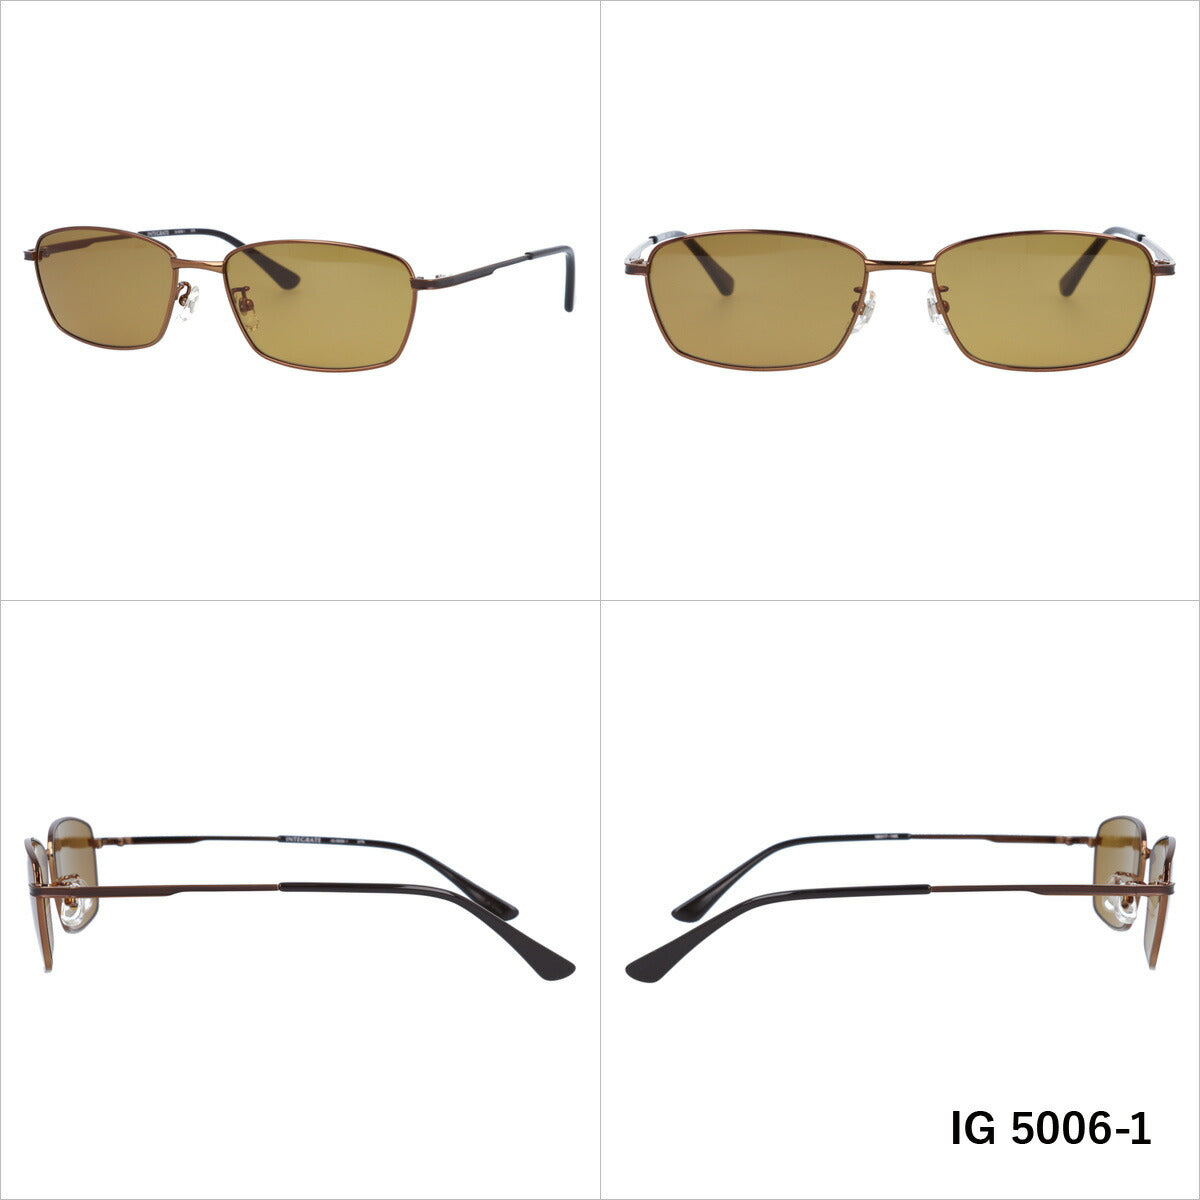 おしゃれ サングラス INTEGRATE インテグレート IG 5006 全3色 58サイズ アジアンフィット スクエア型 メンズ レディース UVカット 紫外線 対策 ブランド 眼鏡 メガネ アイウェア 人気 おすすめ ラッピング無料